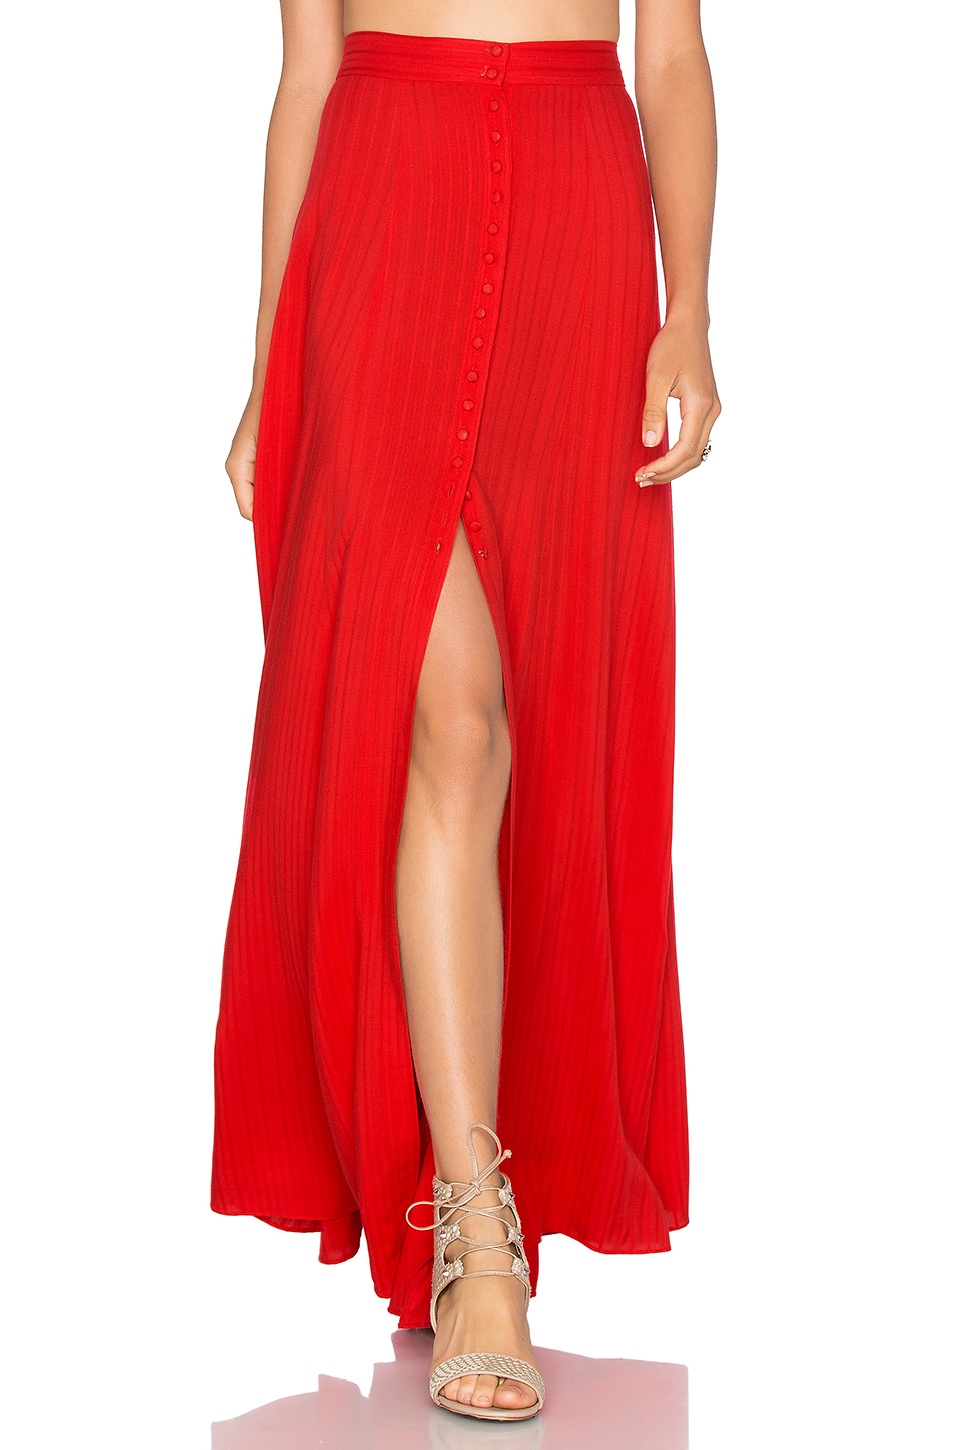 MAJORELLE Sangria Maxi Skirt in Red | REVOLVE